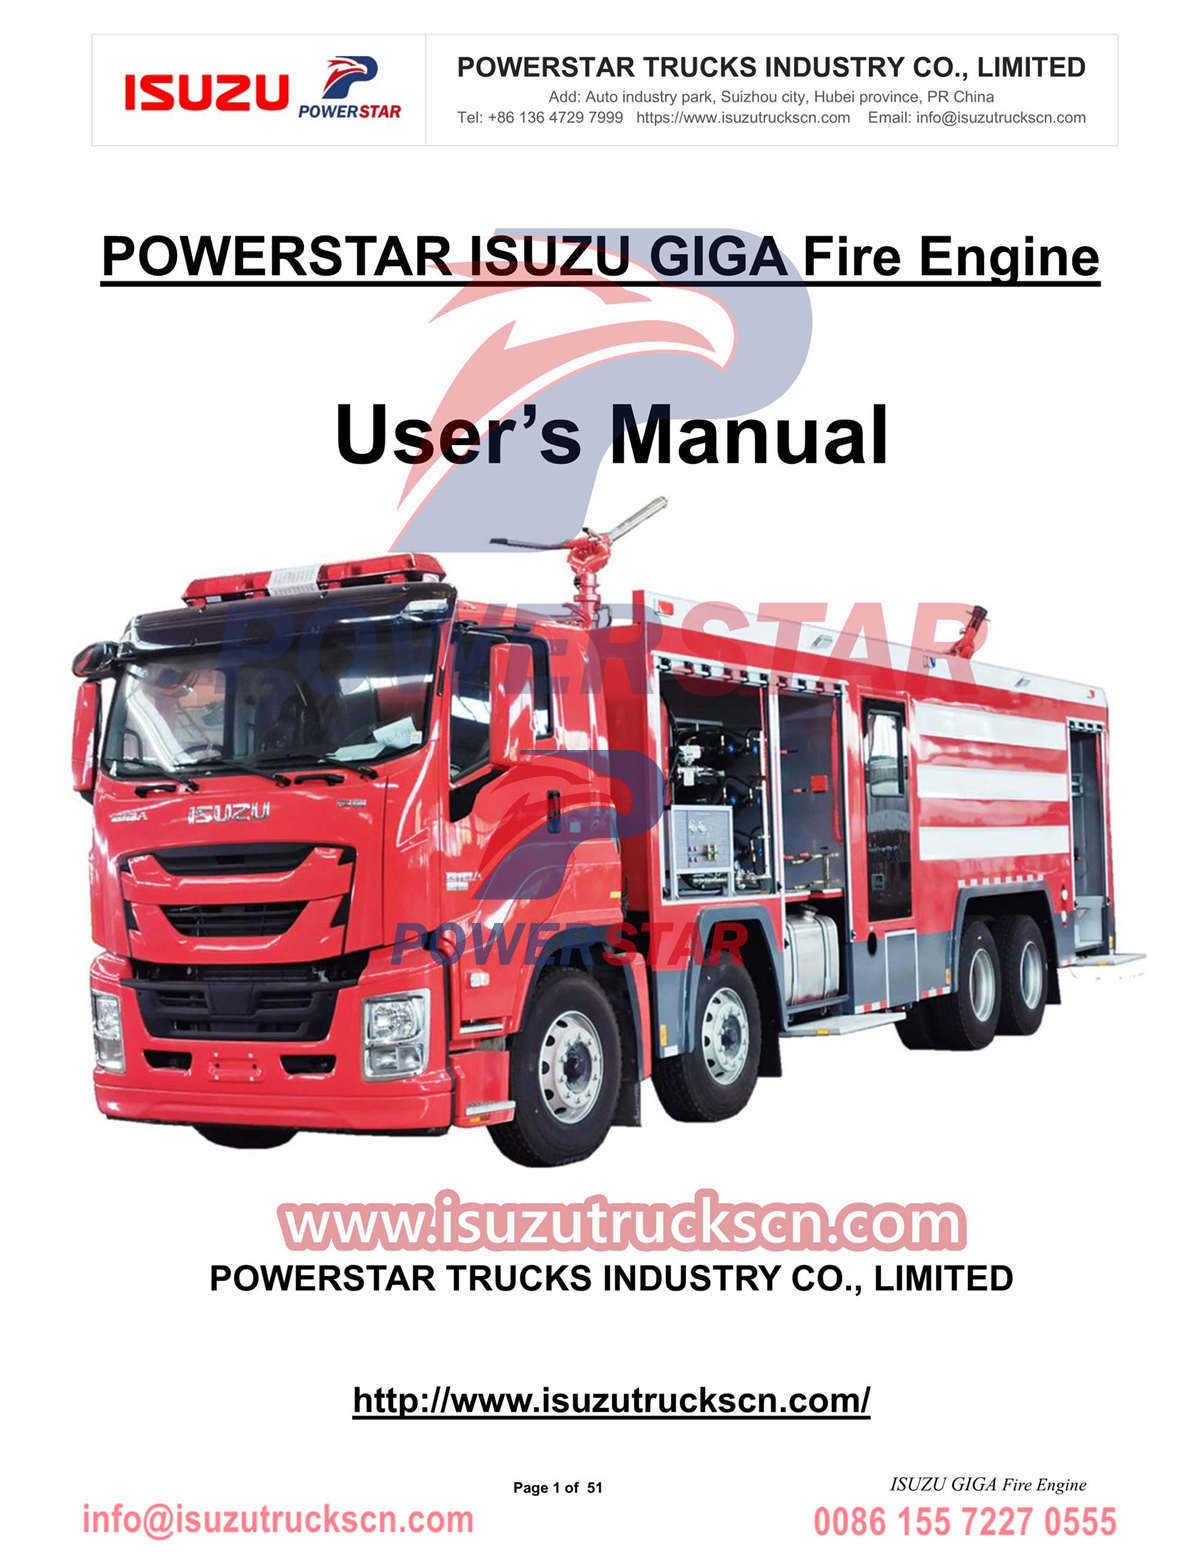 دليل تشغيل محرك الإطفاء ISUZU GIGA تصدير الكونغو وجمهورية الكونغو الديمقراطية
        